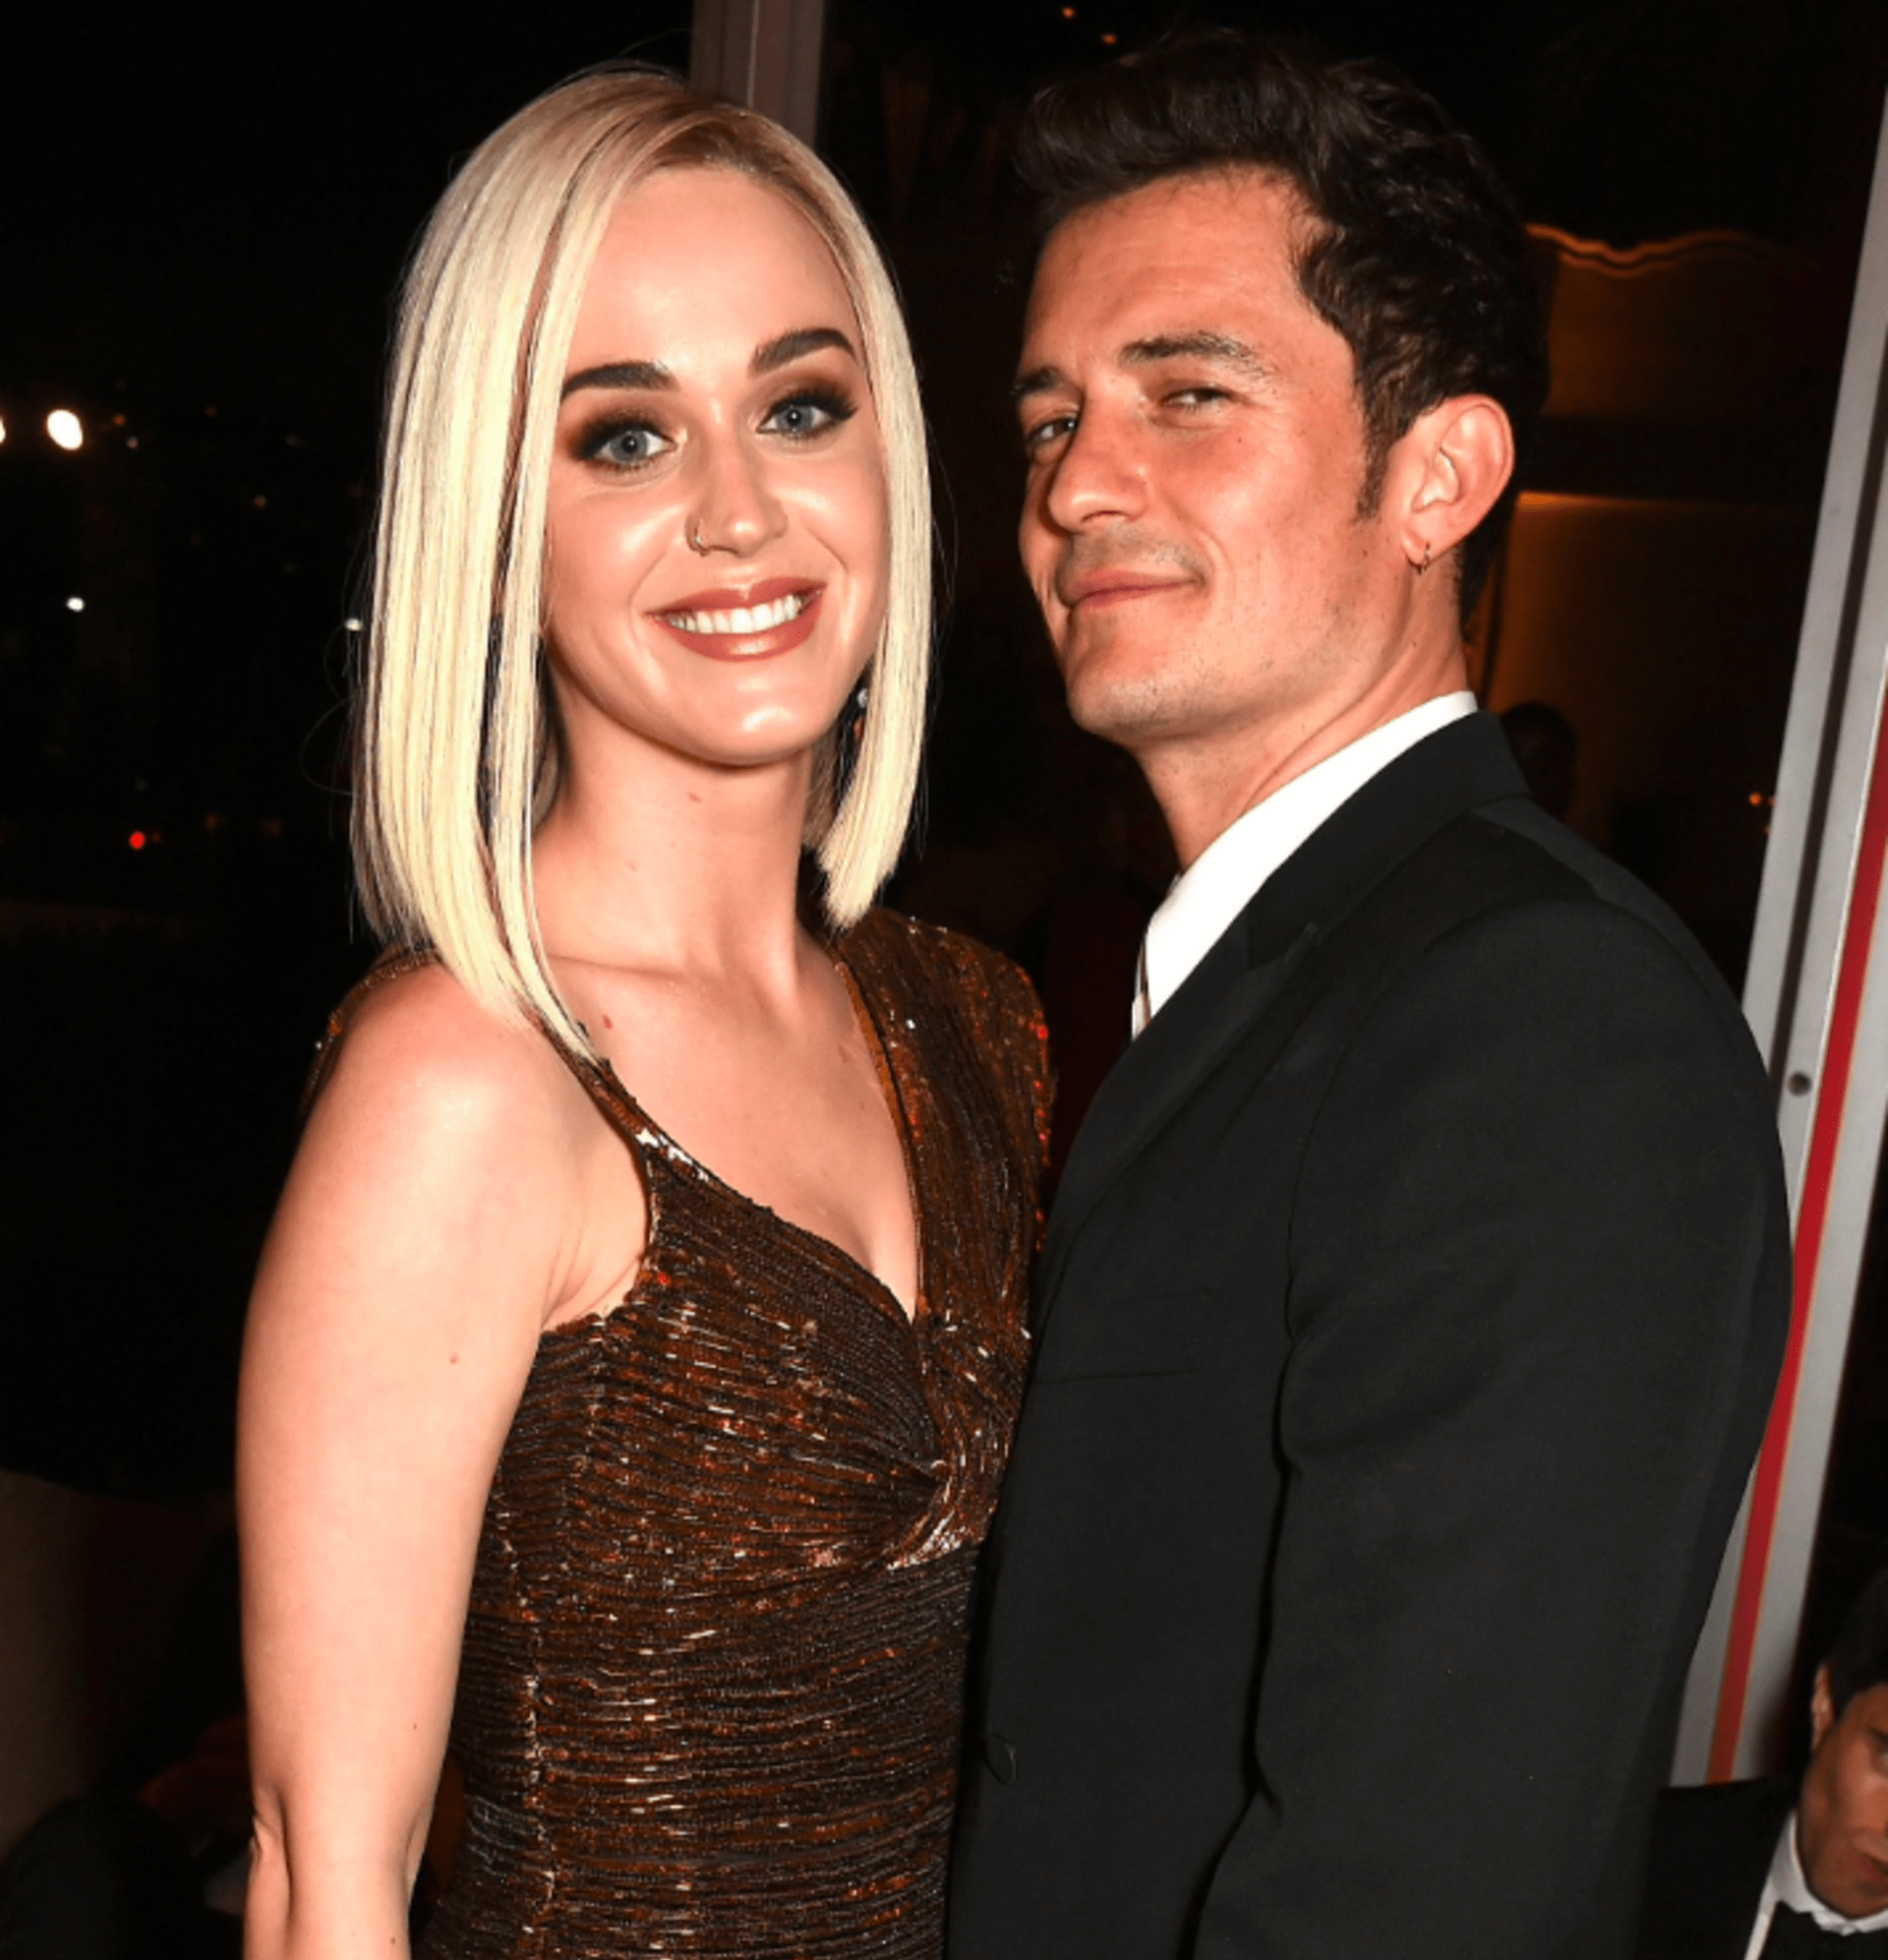 Katy Perry a Orlando Bloom